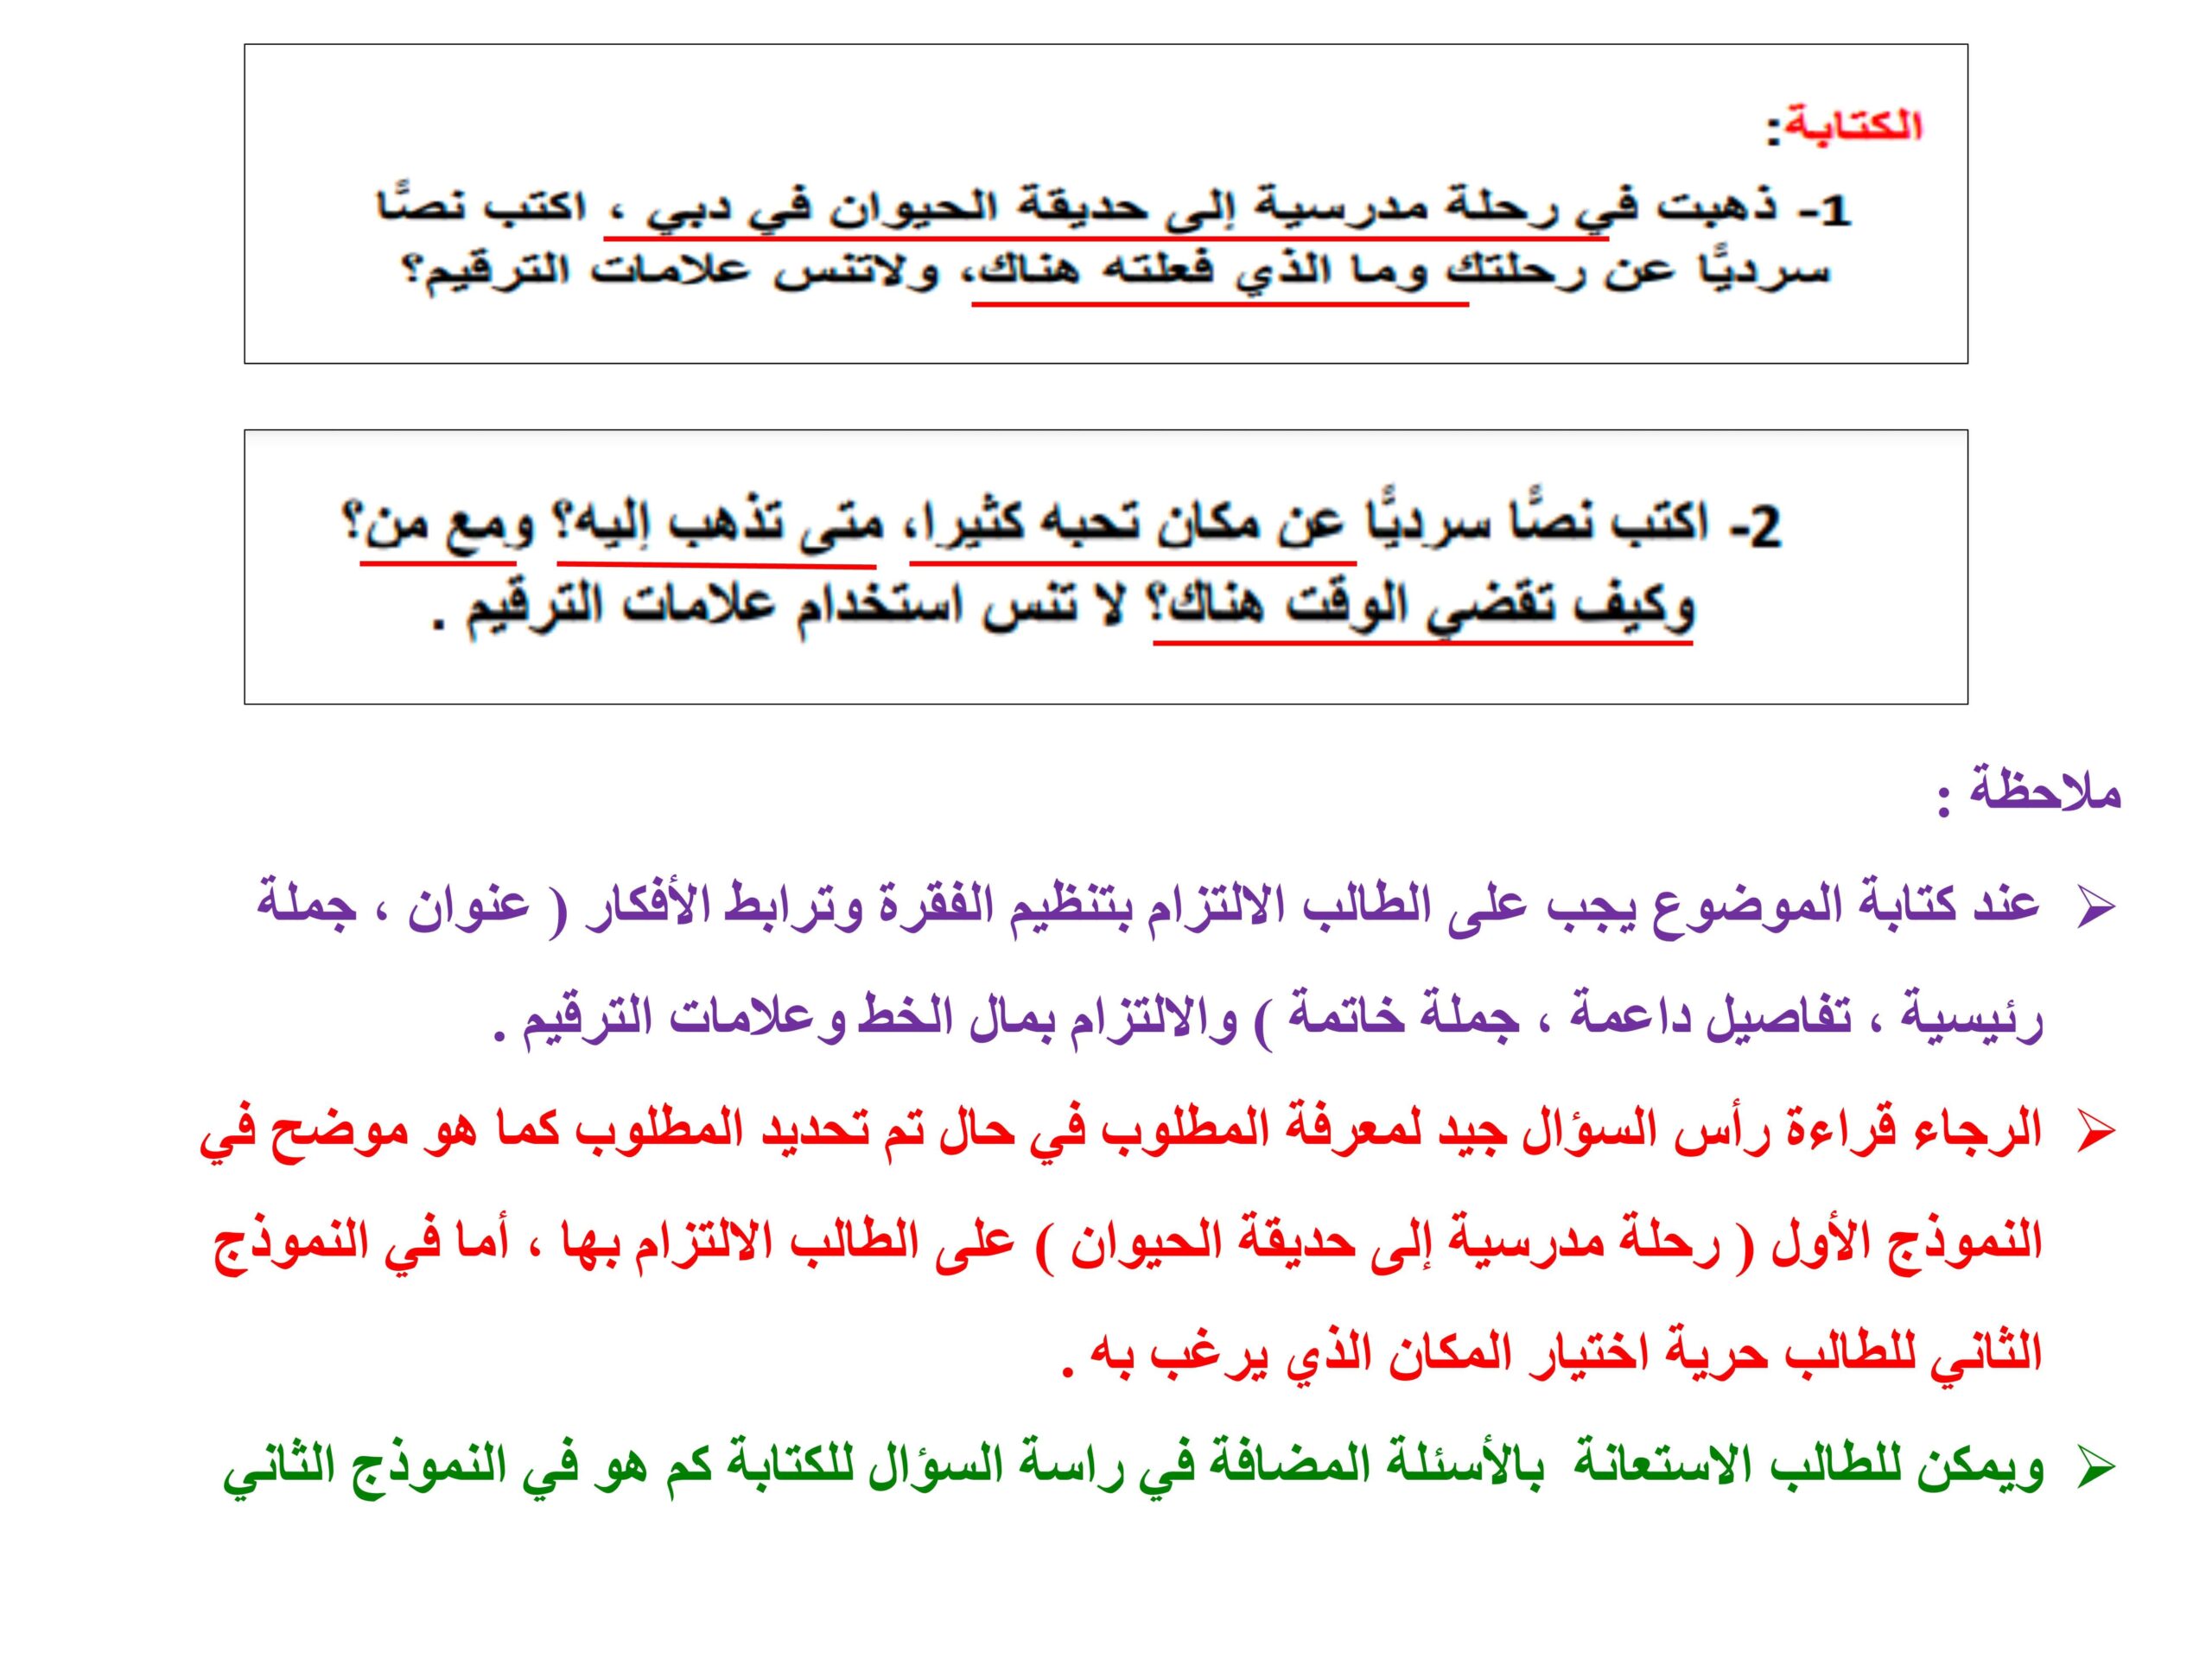 نماذج مواضيع كتابة اللغة العربية الصف الثالث